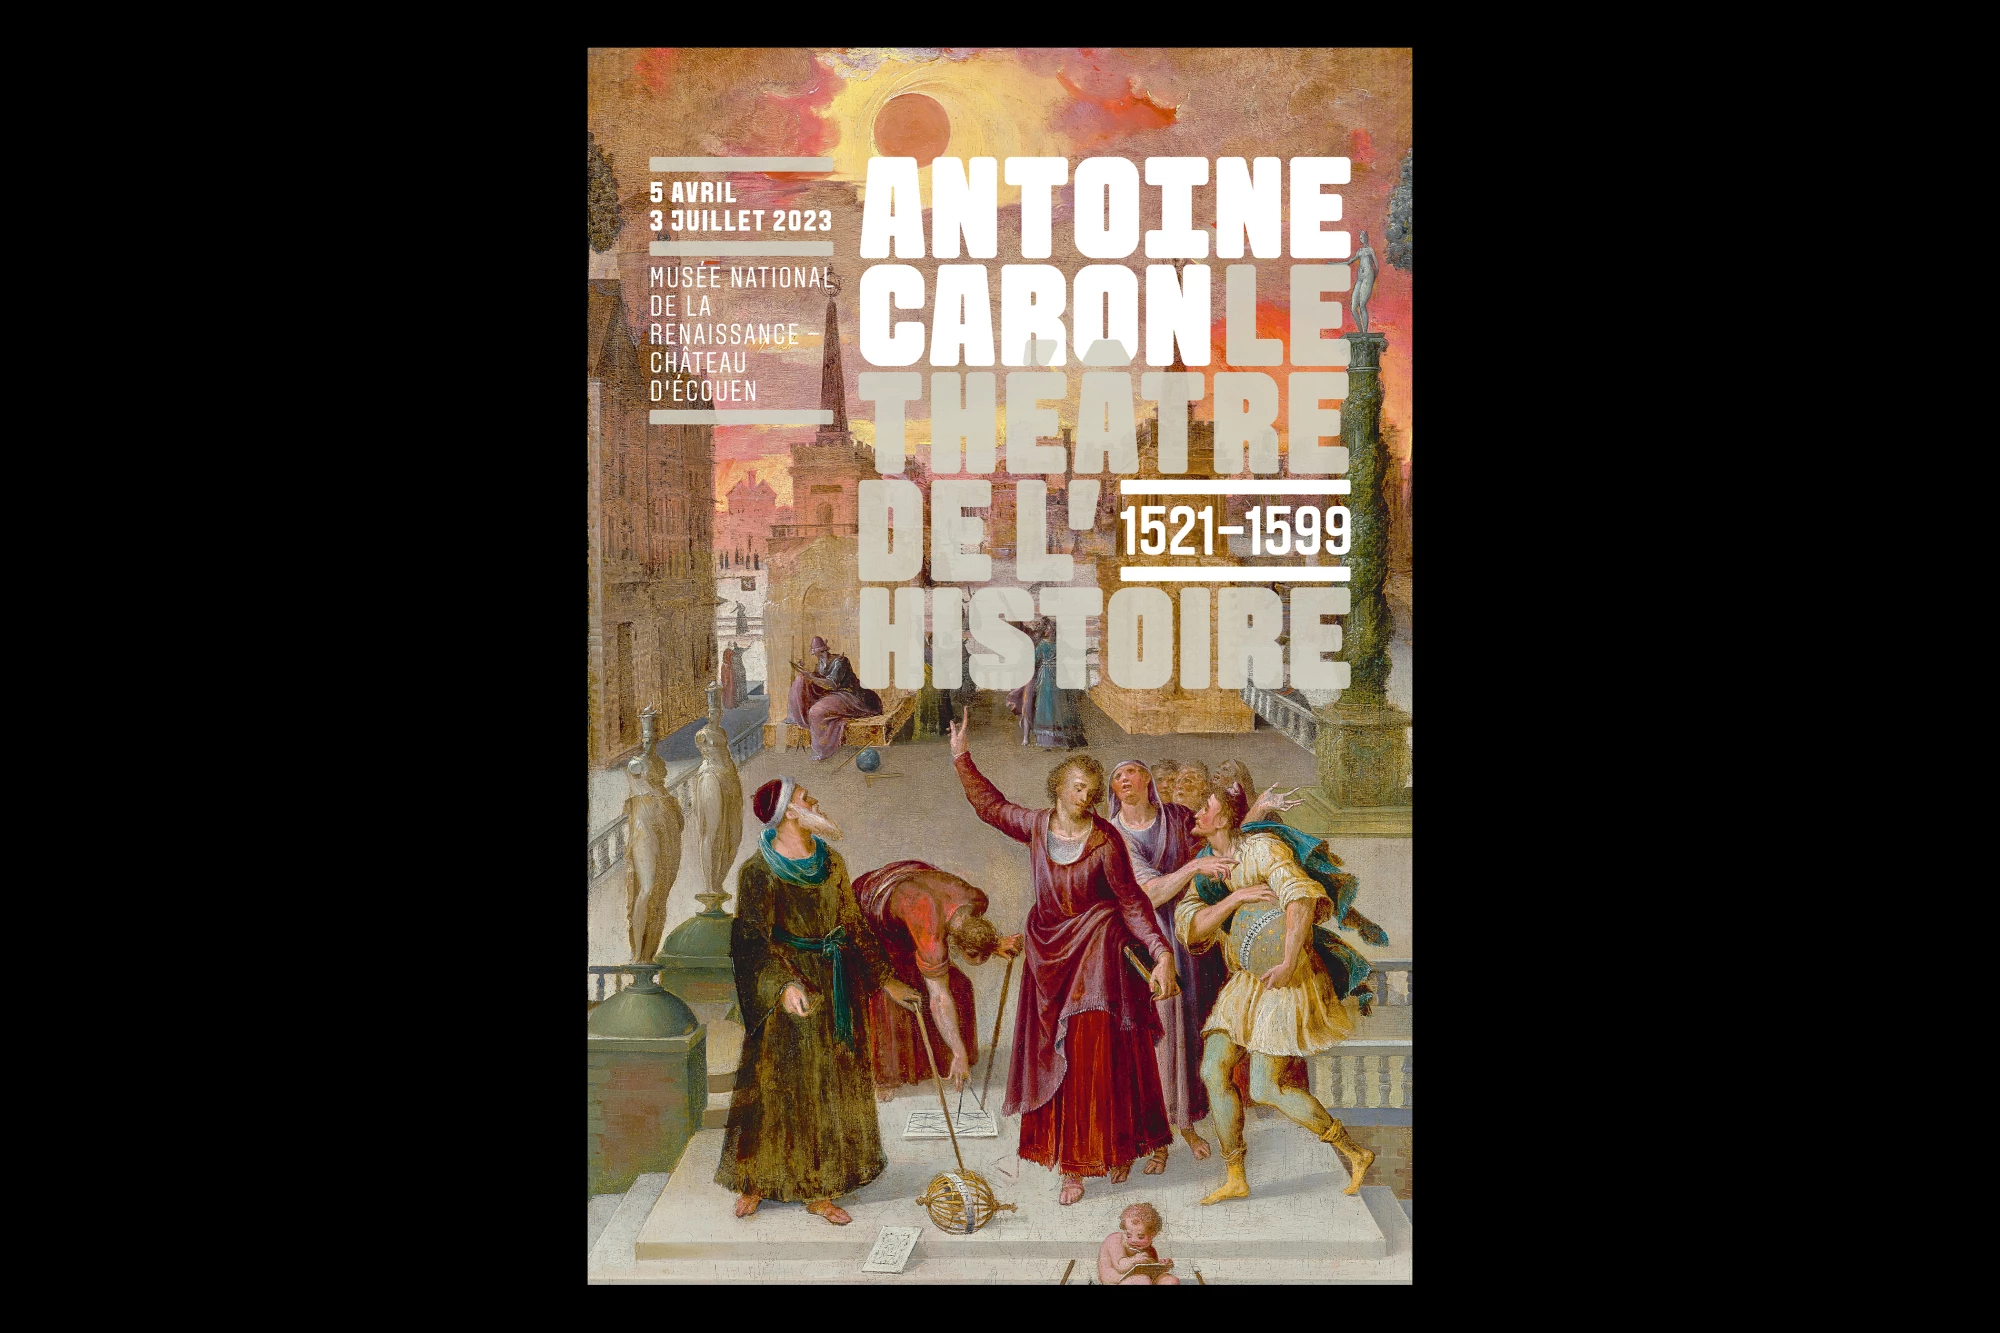 Léo Grunstein - Antoine Caron. The Theater of History, Musée de la Renaissance–Château d’Écouen, Poster, Signage, Branding, 2023